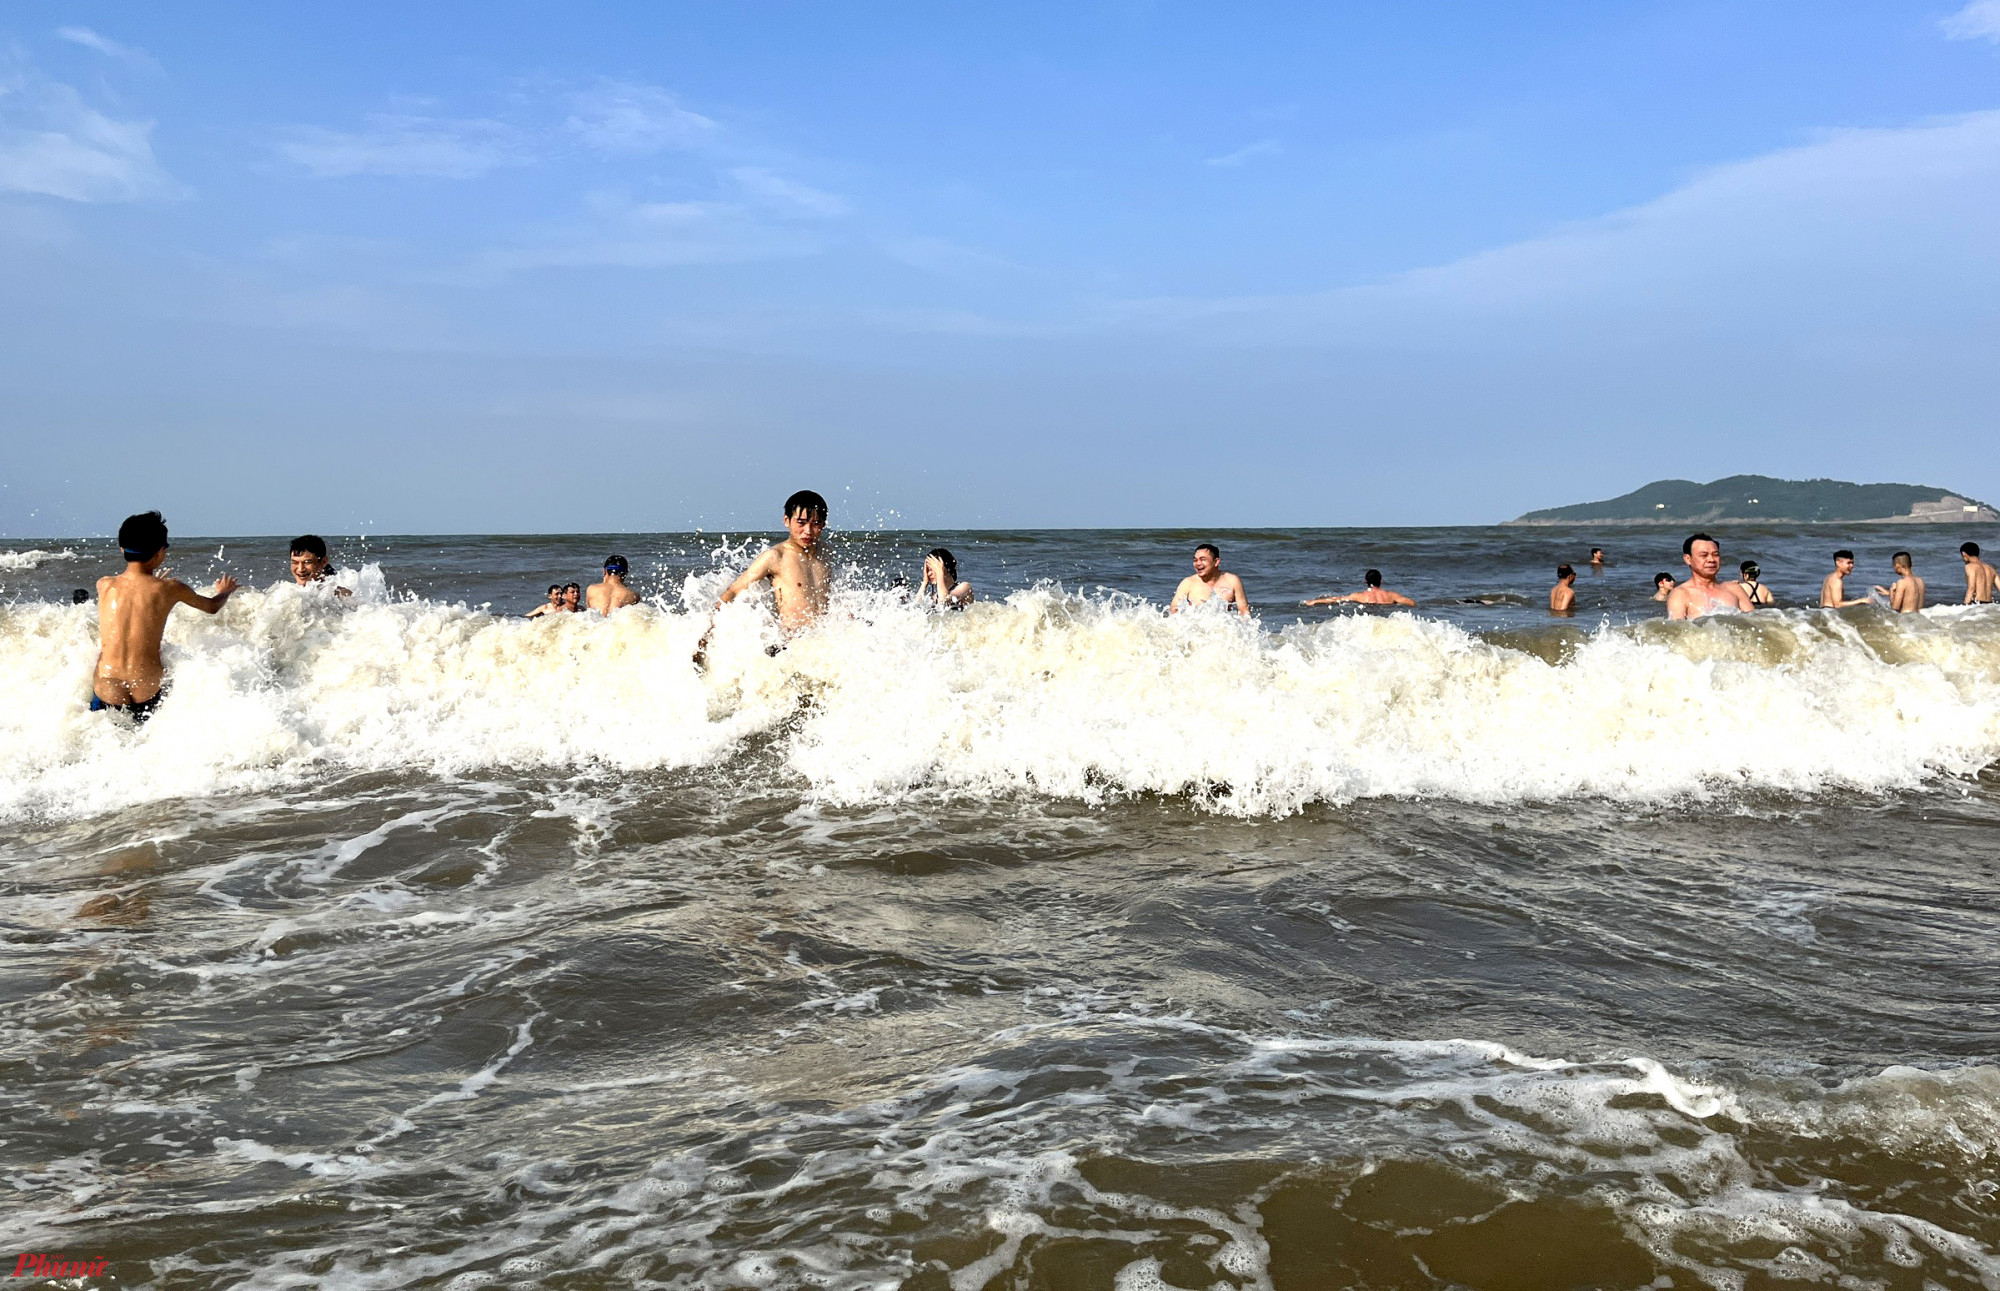 Sóng lớn, hàng ngàn du khách vẫn liều mình xuống tắm. Thậm chí nhiều người còn đi ra xa bờ biển để “hứng sóng”, tìm cảm giác mạnh.